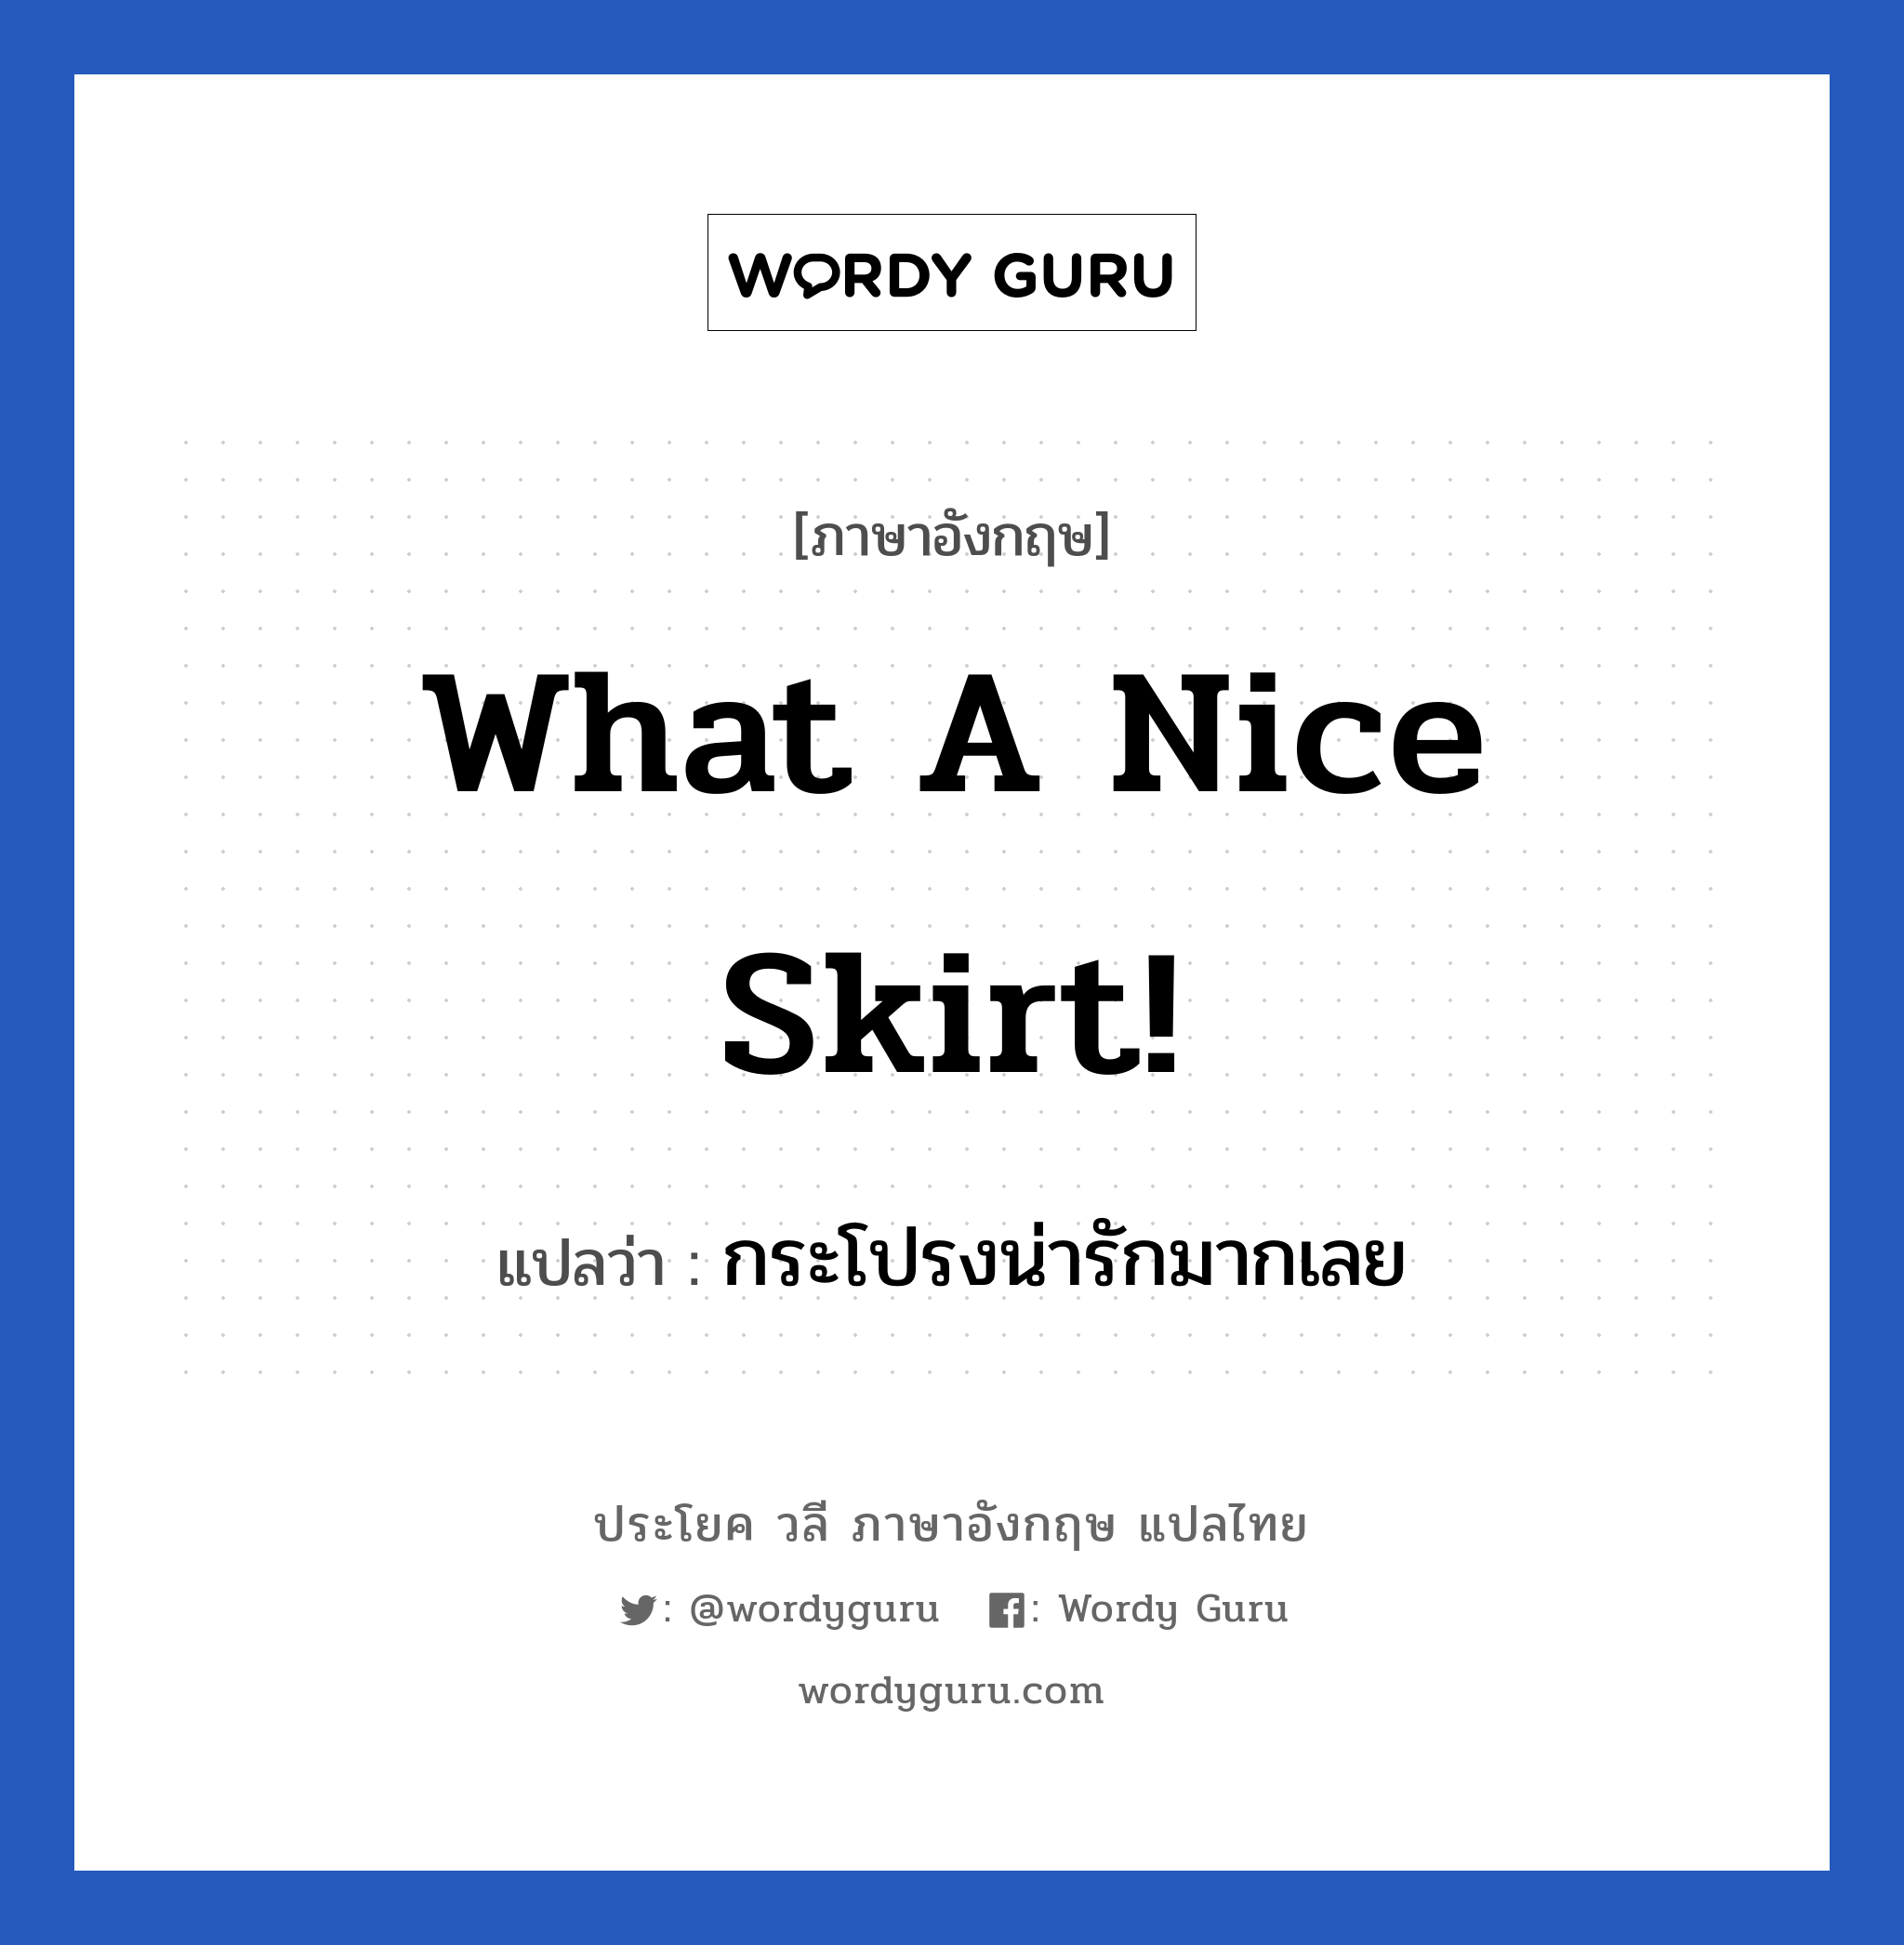 กระโปรงน่ารักมากเลย ภาษาอังกฤษ?, วลีภาษาอังกฤษ กระโปรงน่ารักมากเลย แปลว่า What a nice skirt!